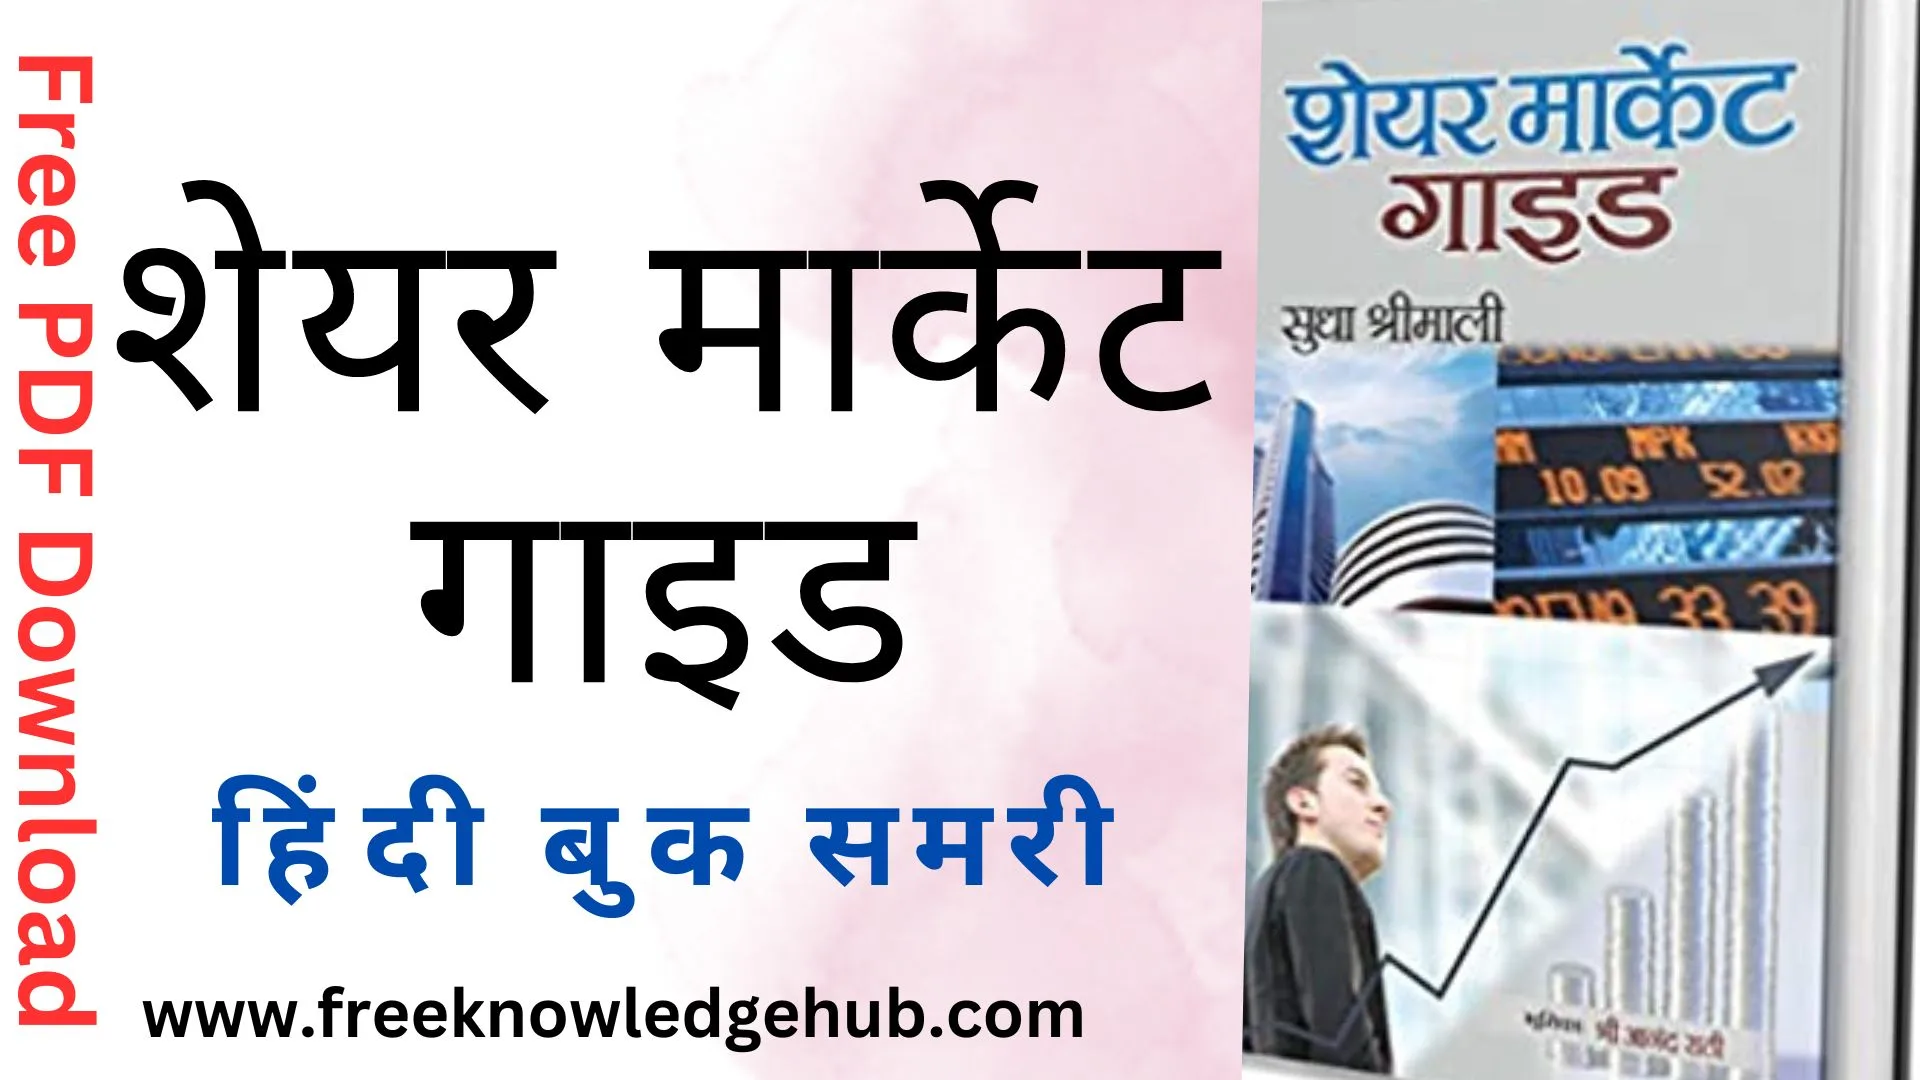 "शेयर मार्केट गाइड" हिंदी बुक समरी| Download Free Book PDF